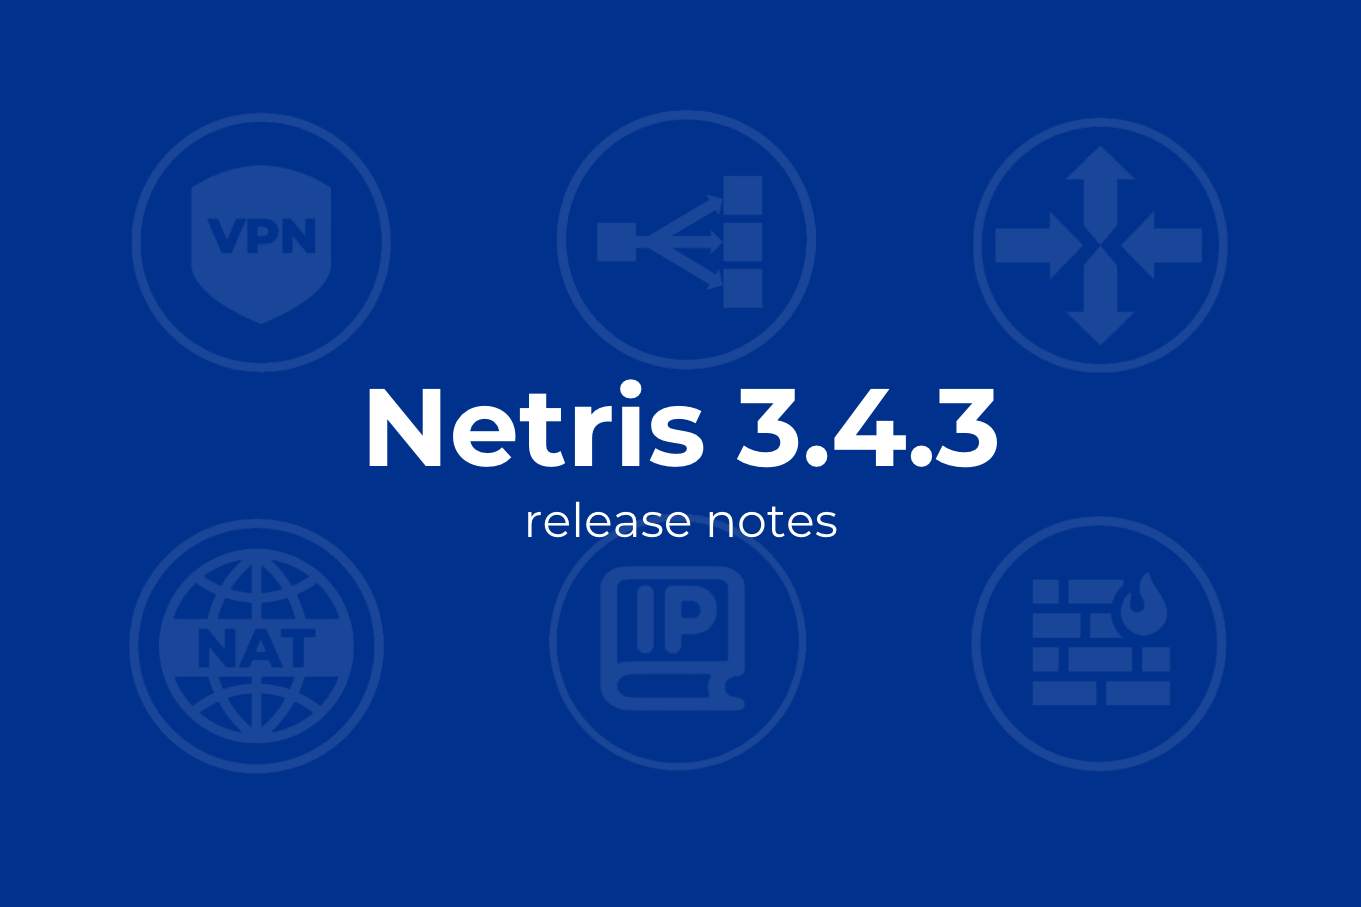 Netris Release Notes 3.4.3